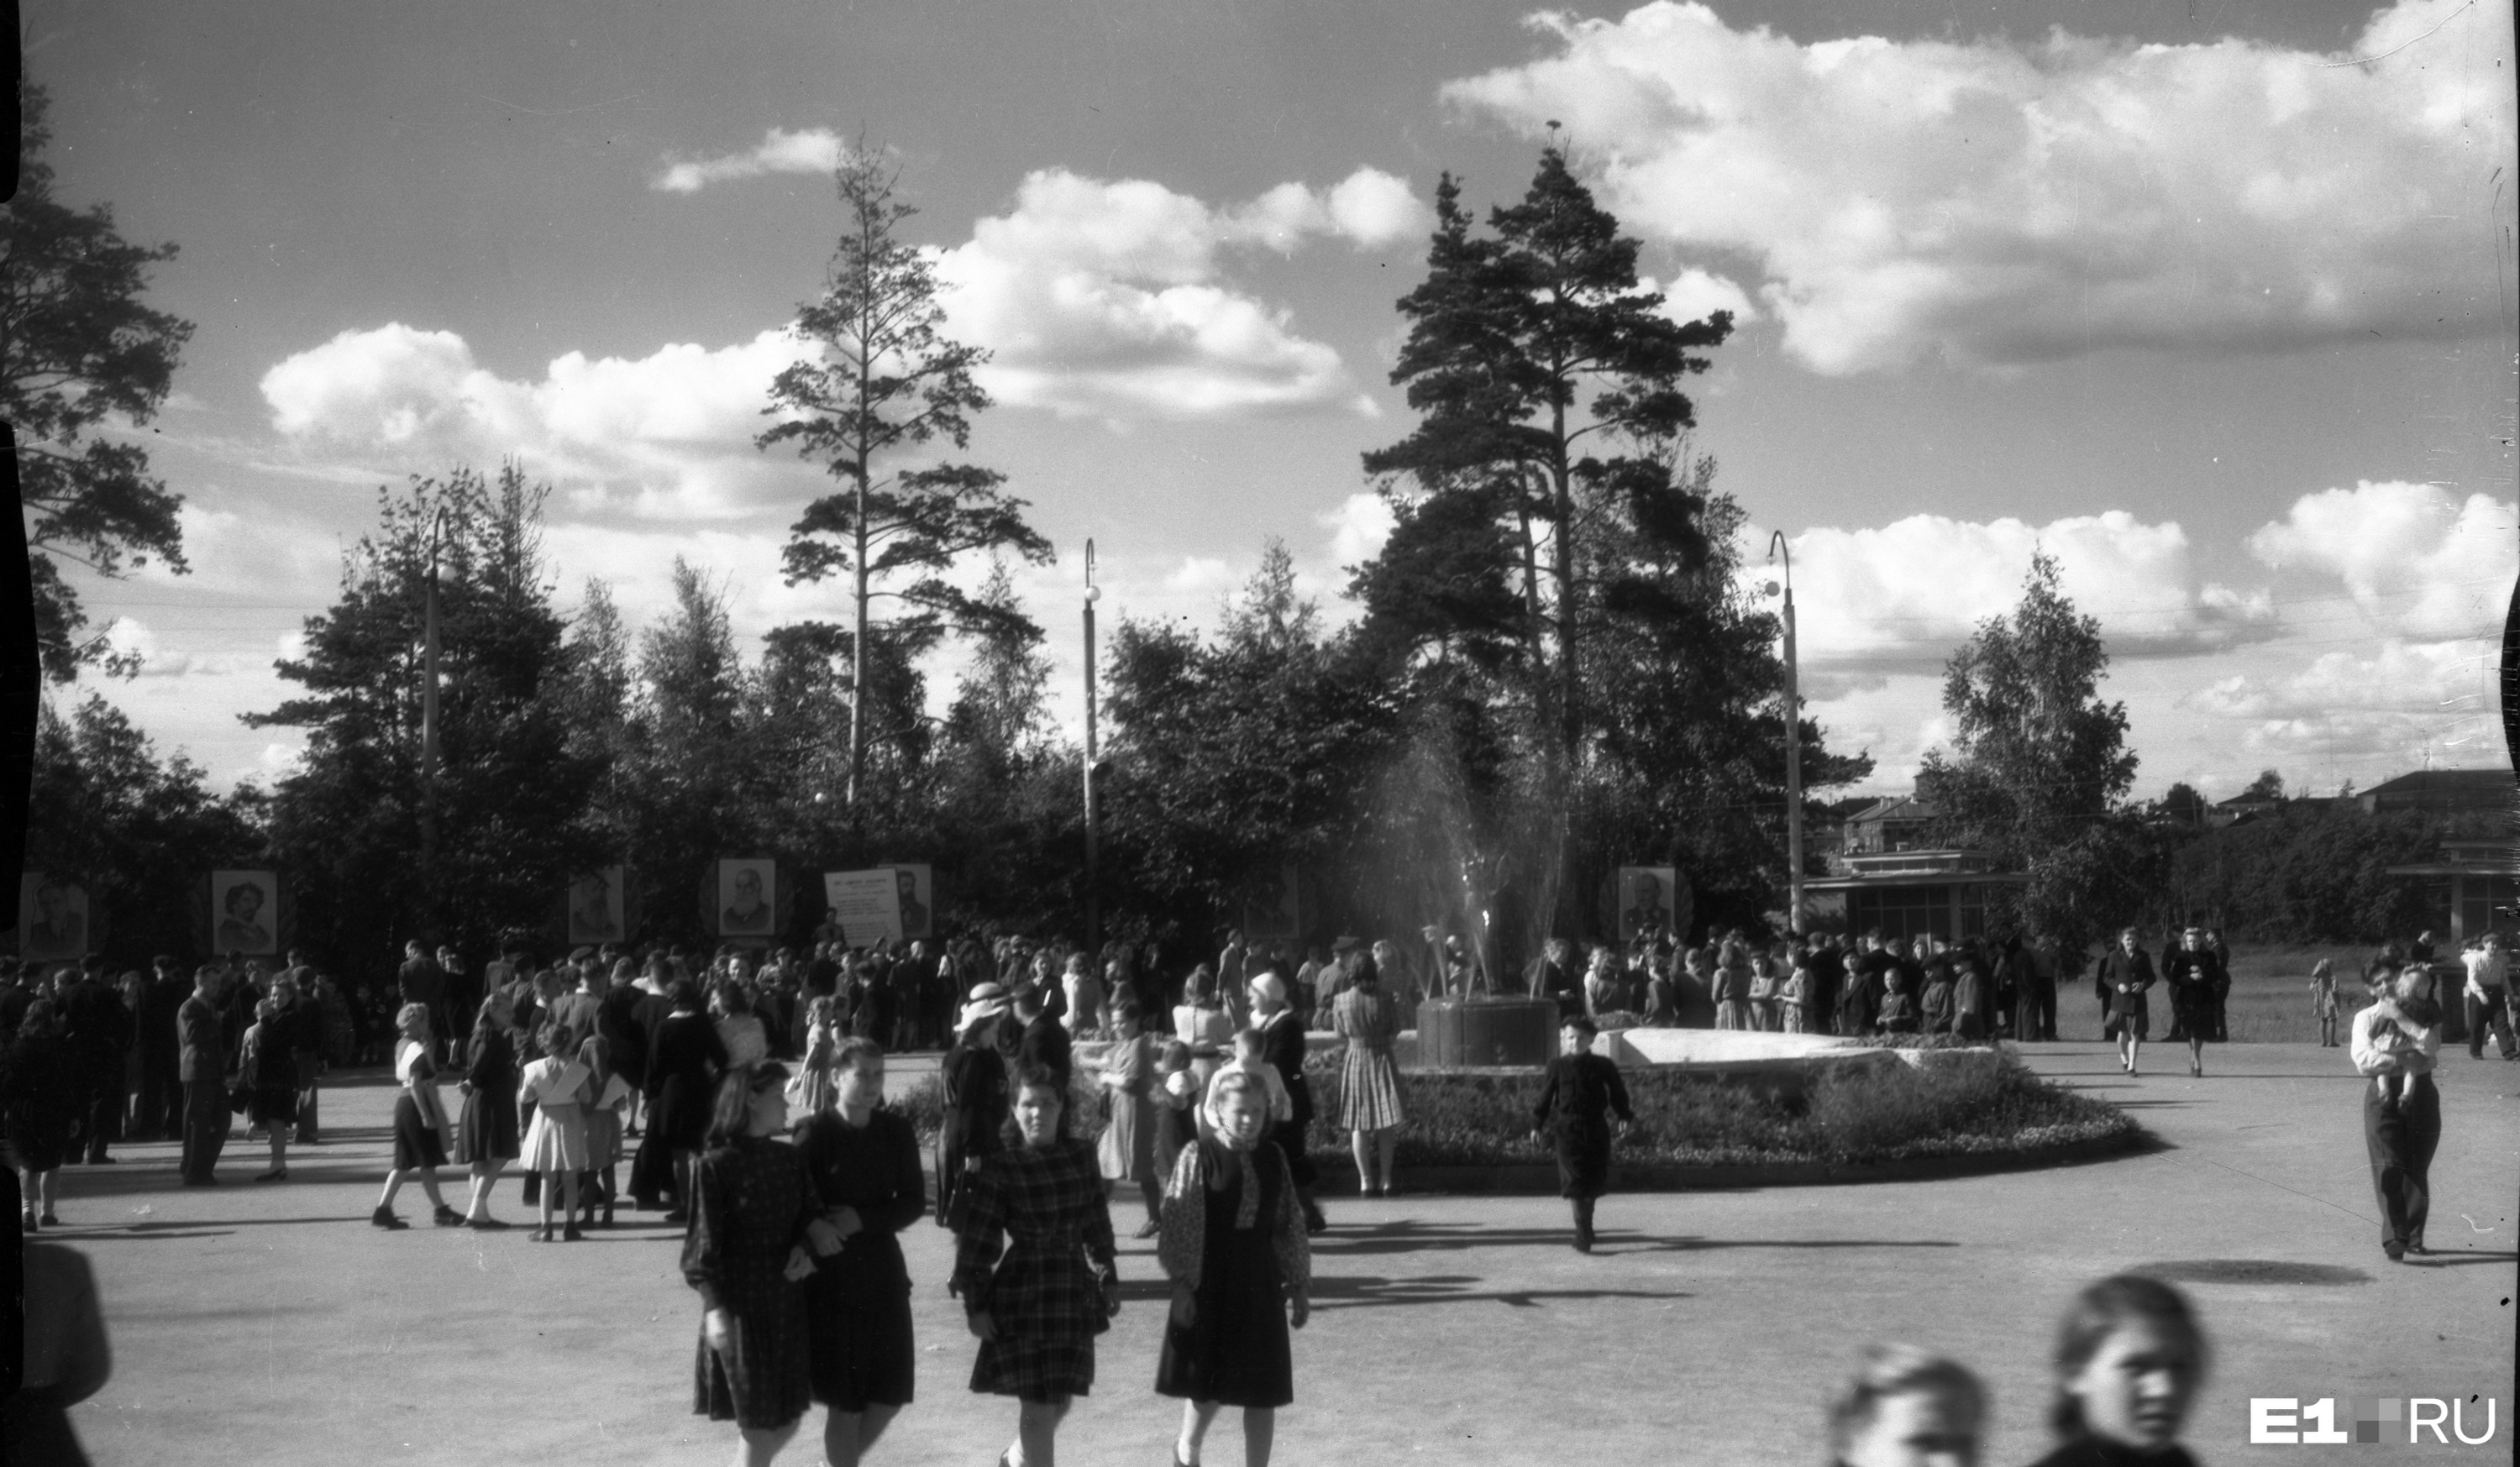 Центральный парк культуры и отдыха. Площадь у
фонтана. 1950 год